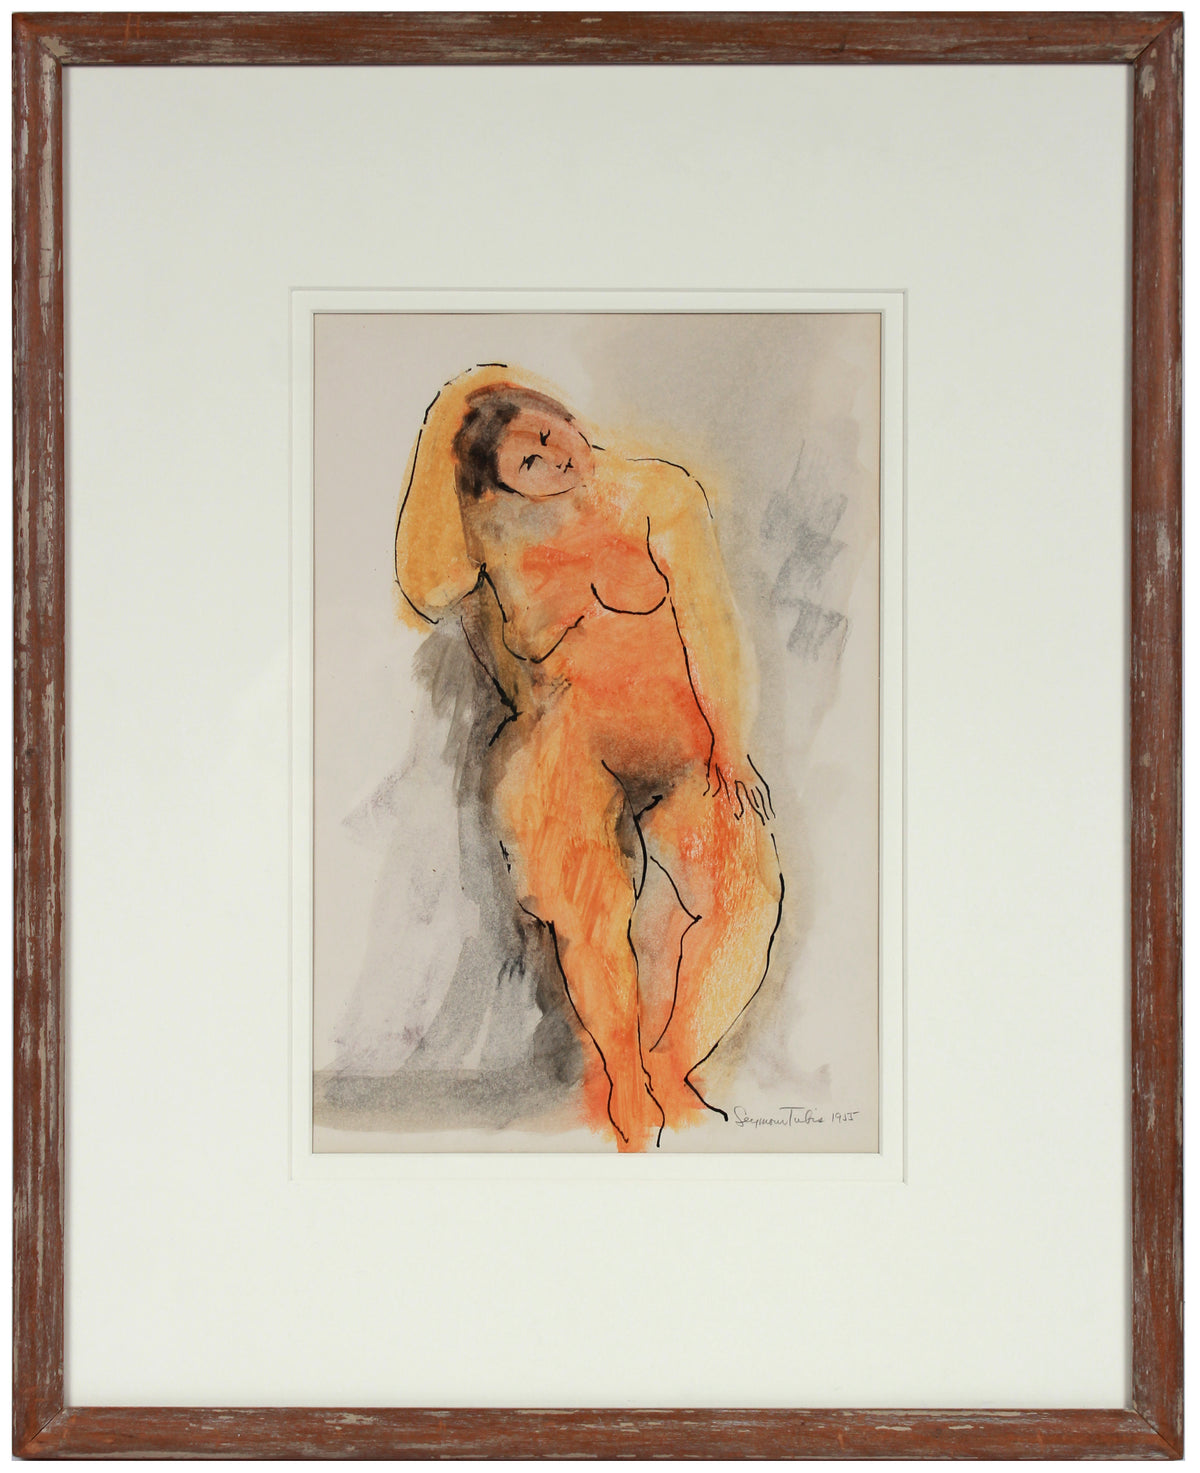 &lt;i&gt;Seated Nude&lt;/i&gt; &lt;br&gt;1955 Ink &amp; Wax &lt;br&gt;&lt;br&gt;#83519